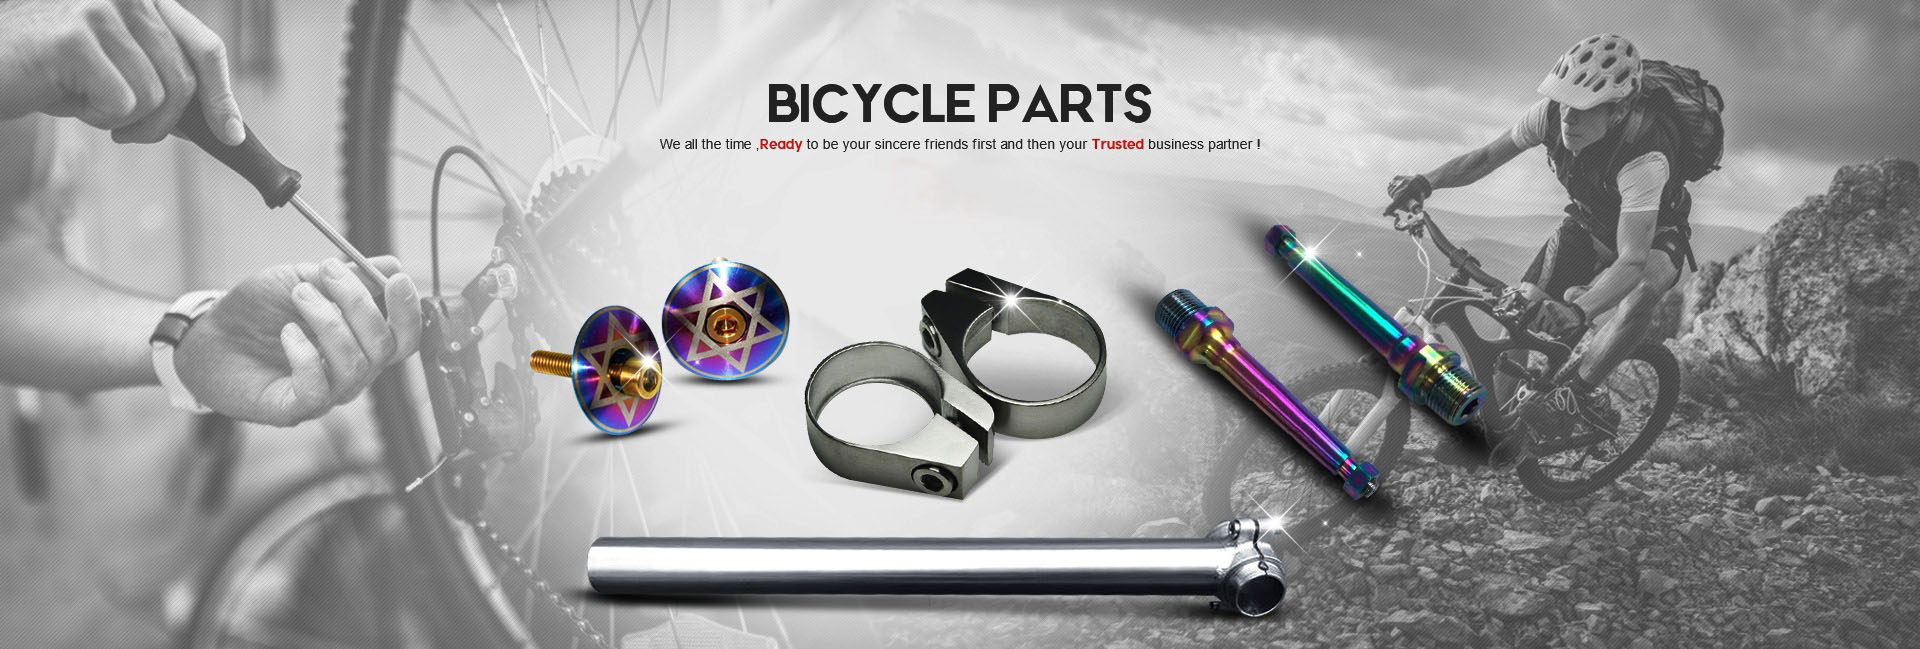 Bicycle titanium alloy parts